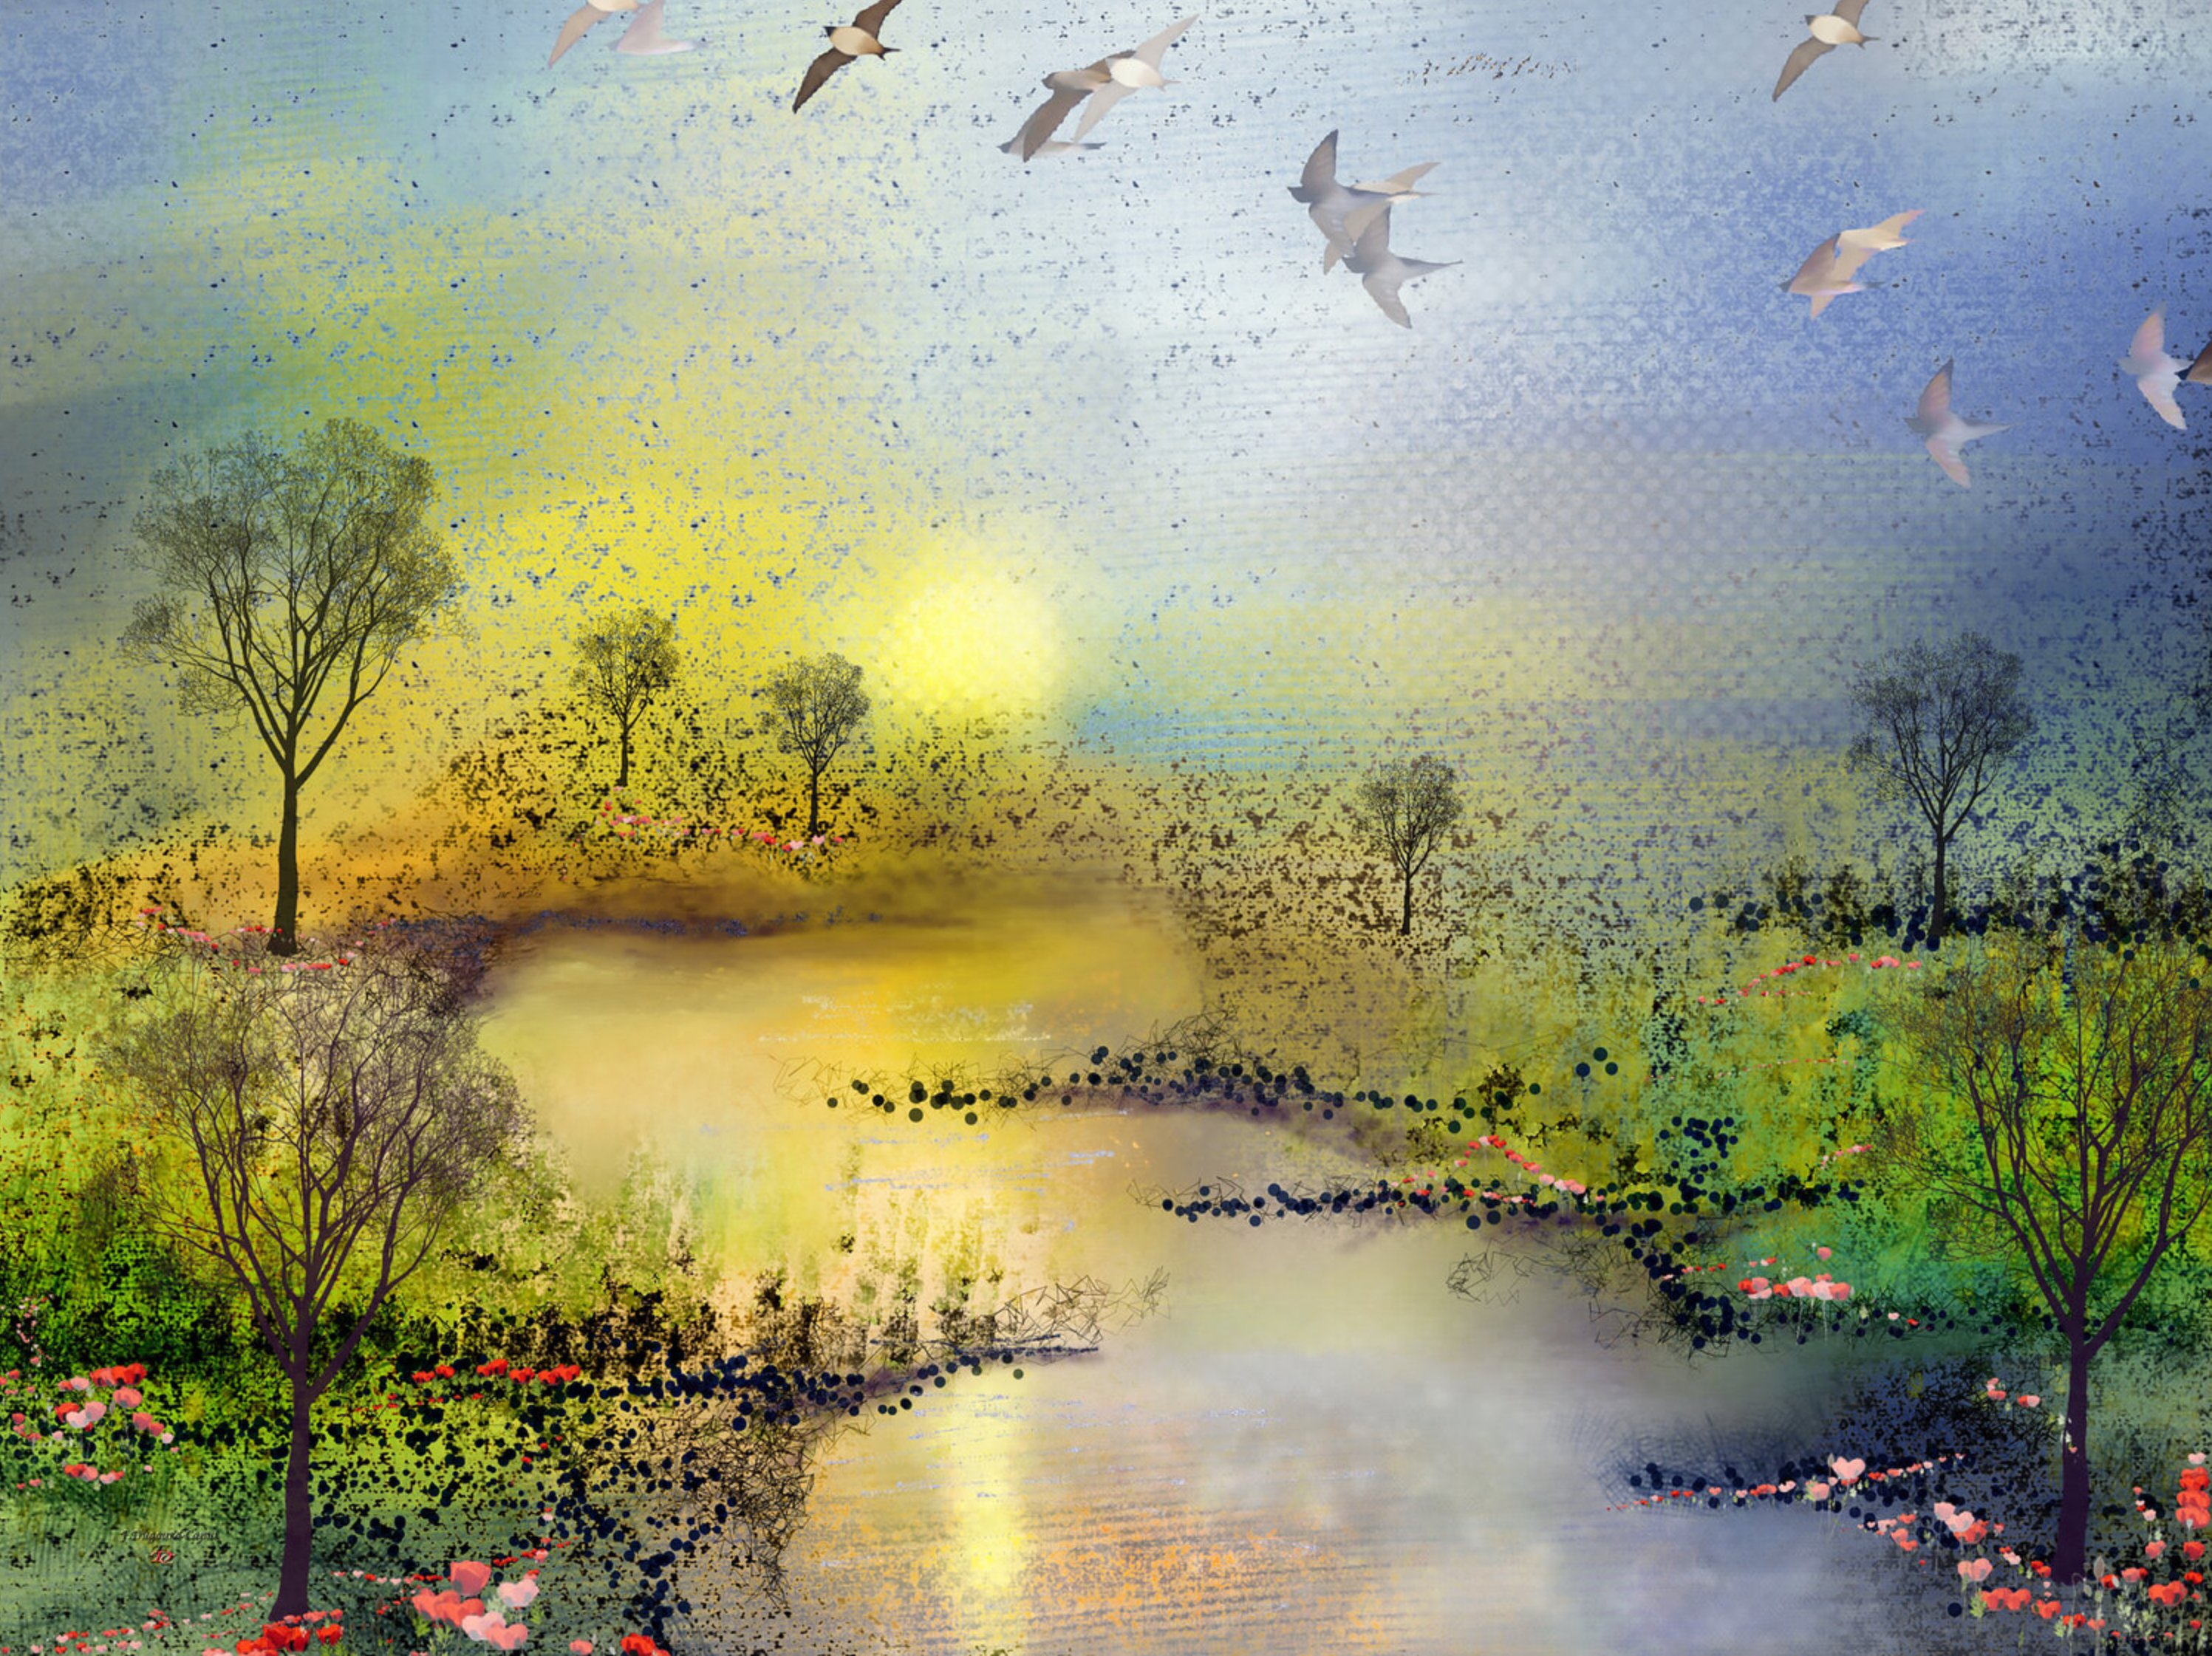 Il dipinto astratto "Les coquelicots" di Françoise Dugourd-Caput raffigura un immaginario paesaggio primaverile pieno di dolcezza, mostrando un fiume che serpeggia tra due prati verdi fiancheggiati da papaveri al tramonto.